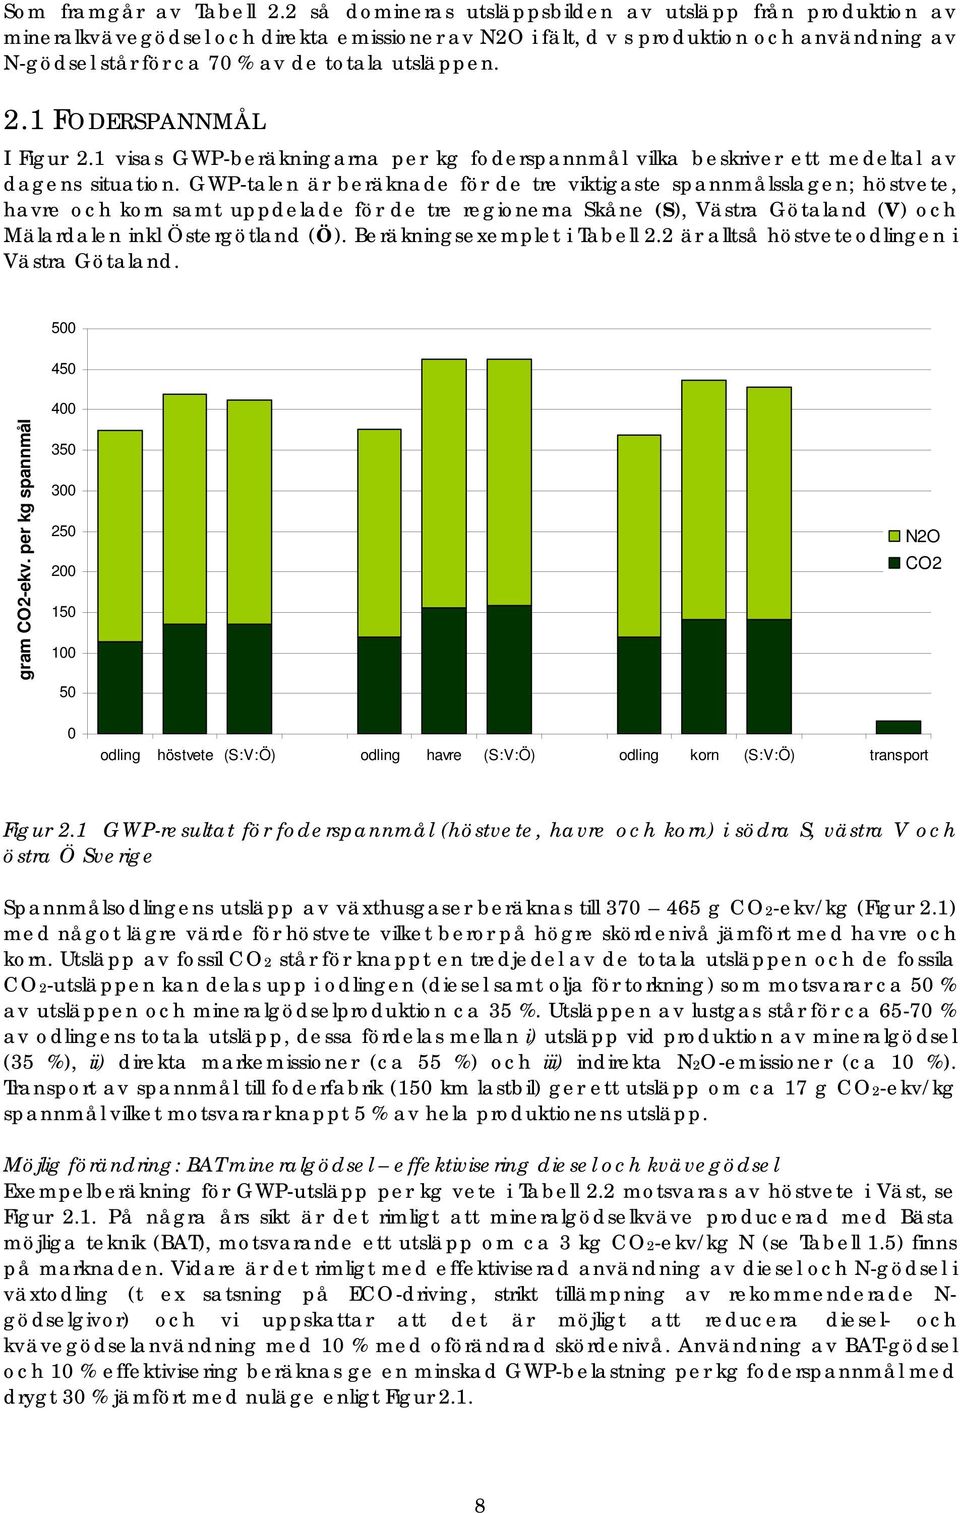 utsläppen. 2.1 FODERSPANNMÅL I Figur 2.1 visas GWP-beräkningarna per kg foderspannmål vilka beskriver ett medeltal av dagens situation.